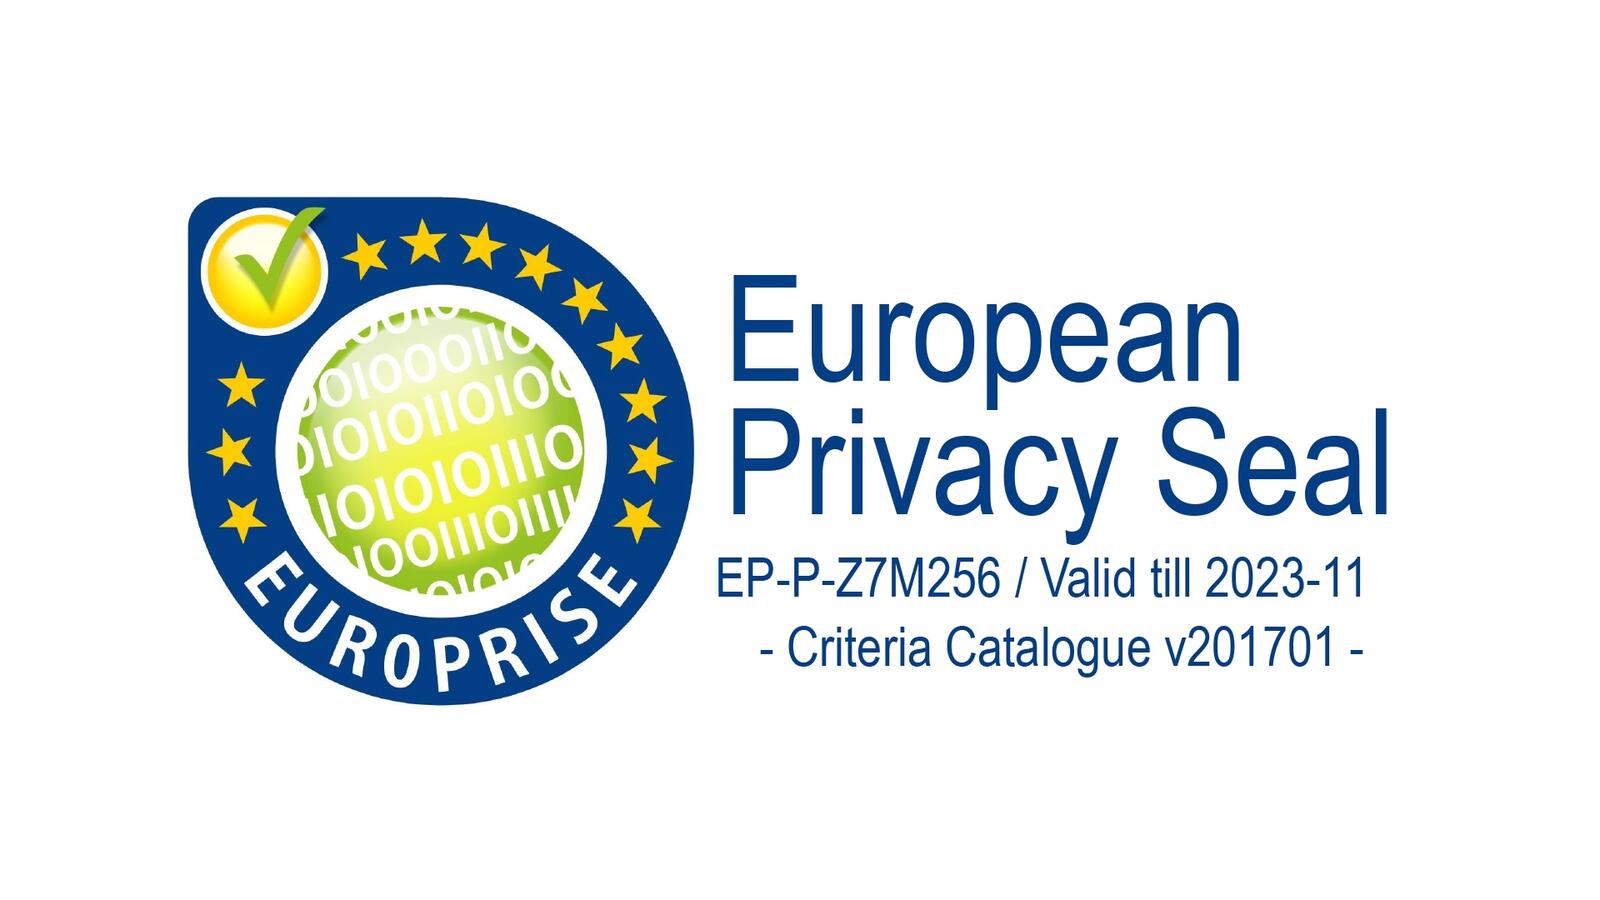 Der Genetec Privacy Protector ist erneut mit dem Europäischen Datenschutzsiegel (Europrise) zertifiziert worden.